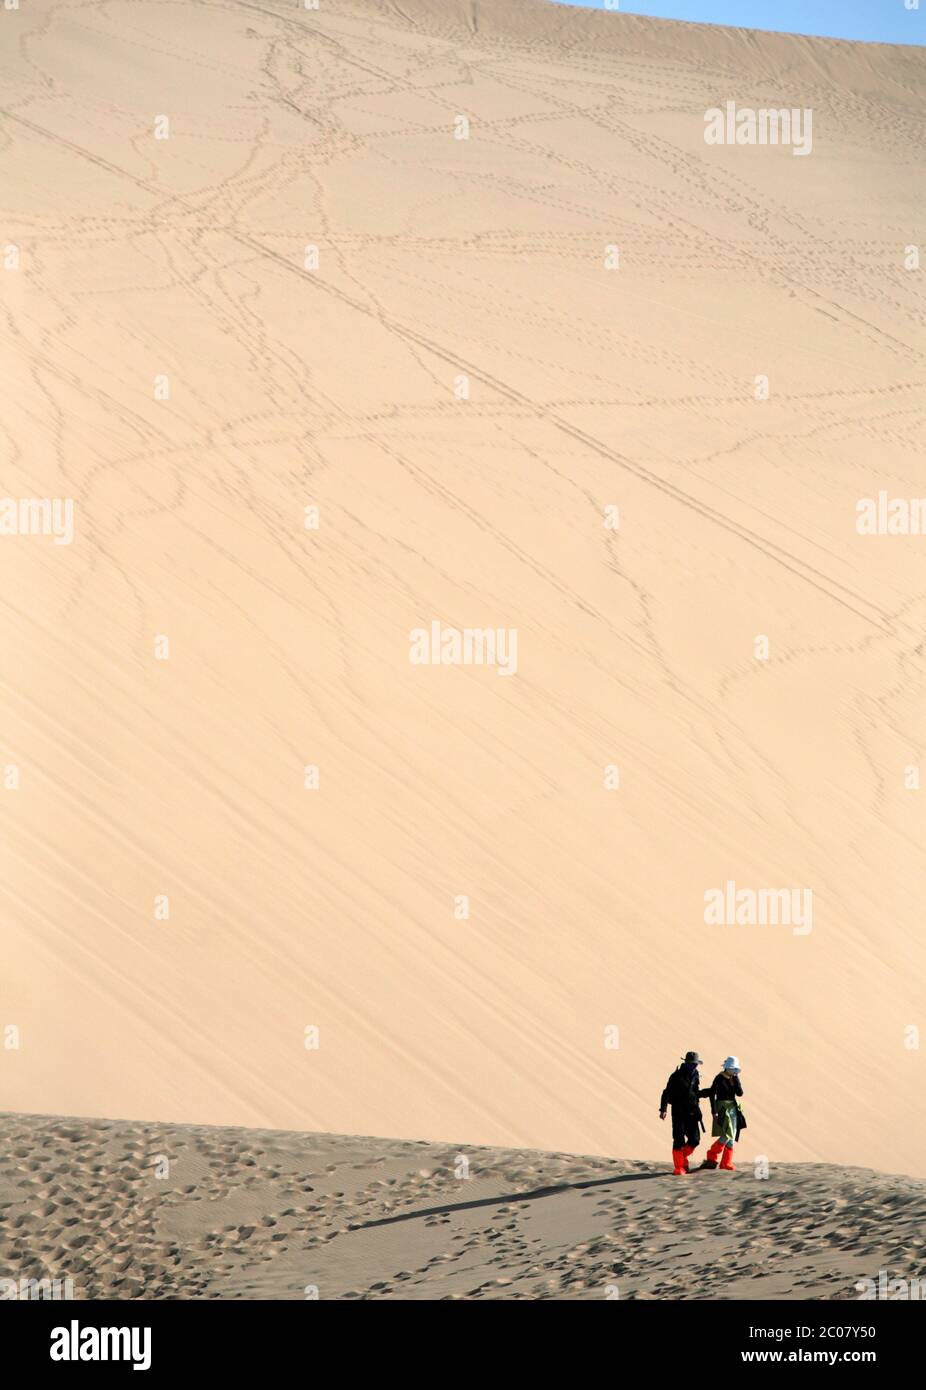 Les dunes de sable chantant (Ming Sha Shan) à Dunhuang, province de Gansu, République populaire de Chine. 30/09/2011. Photo: Stuart Boulton/Alay Banque D'Images